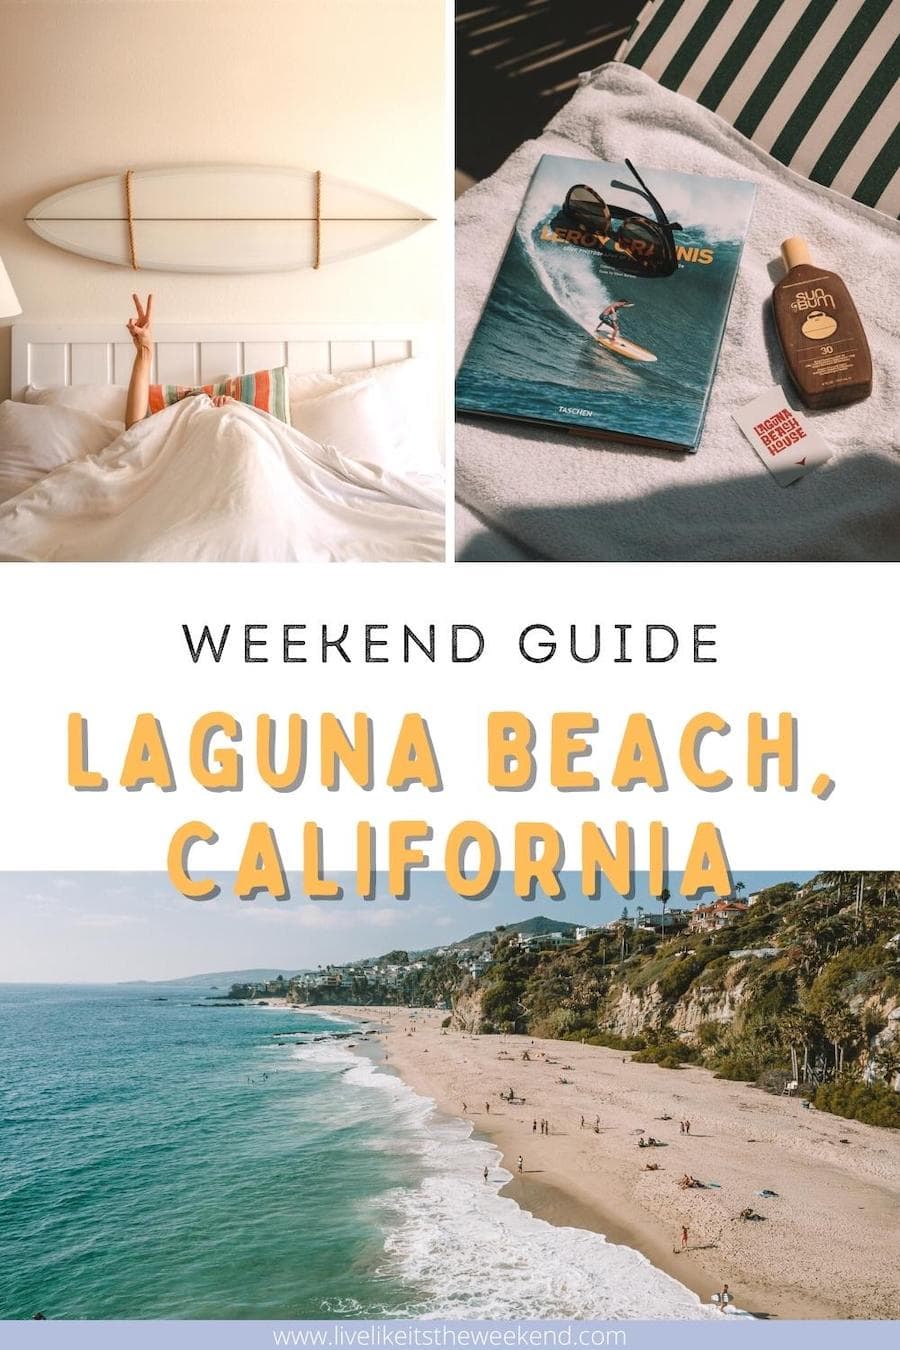 Portada del pin del blog de la guía de fin de semana de Laguna Beach